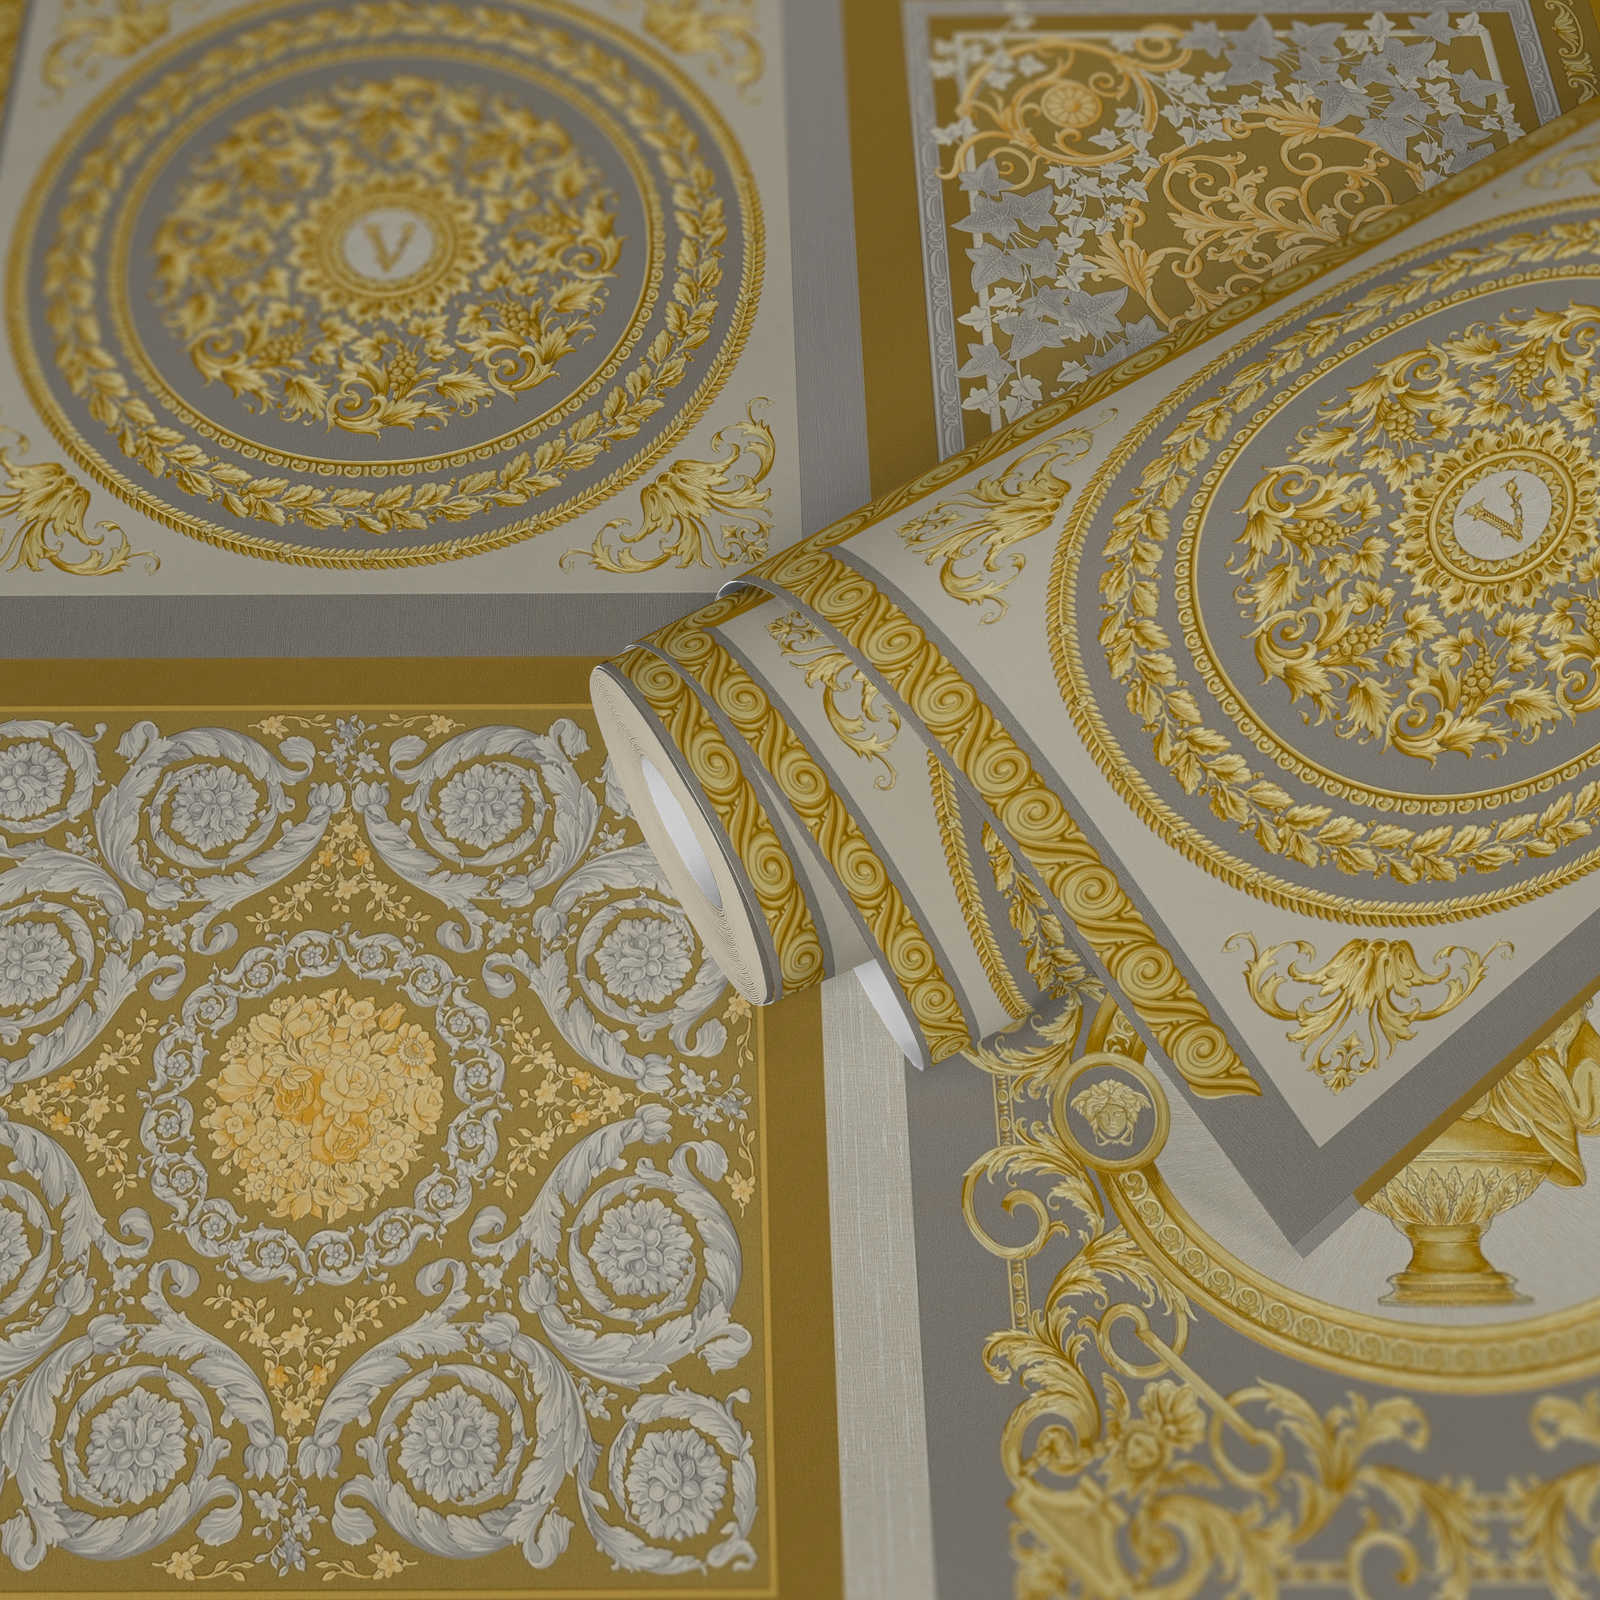             Metallic VERSACE Tapete mit Ornamentdesign, Gold und Silber
        